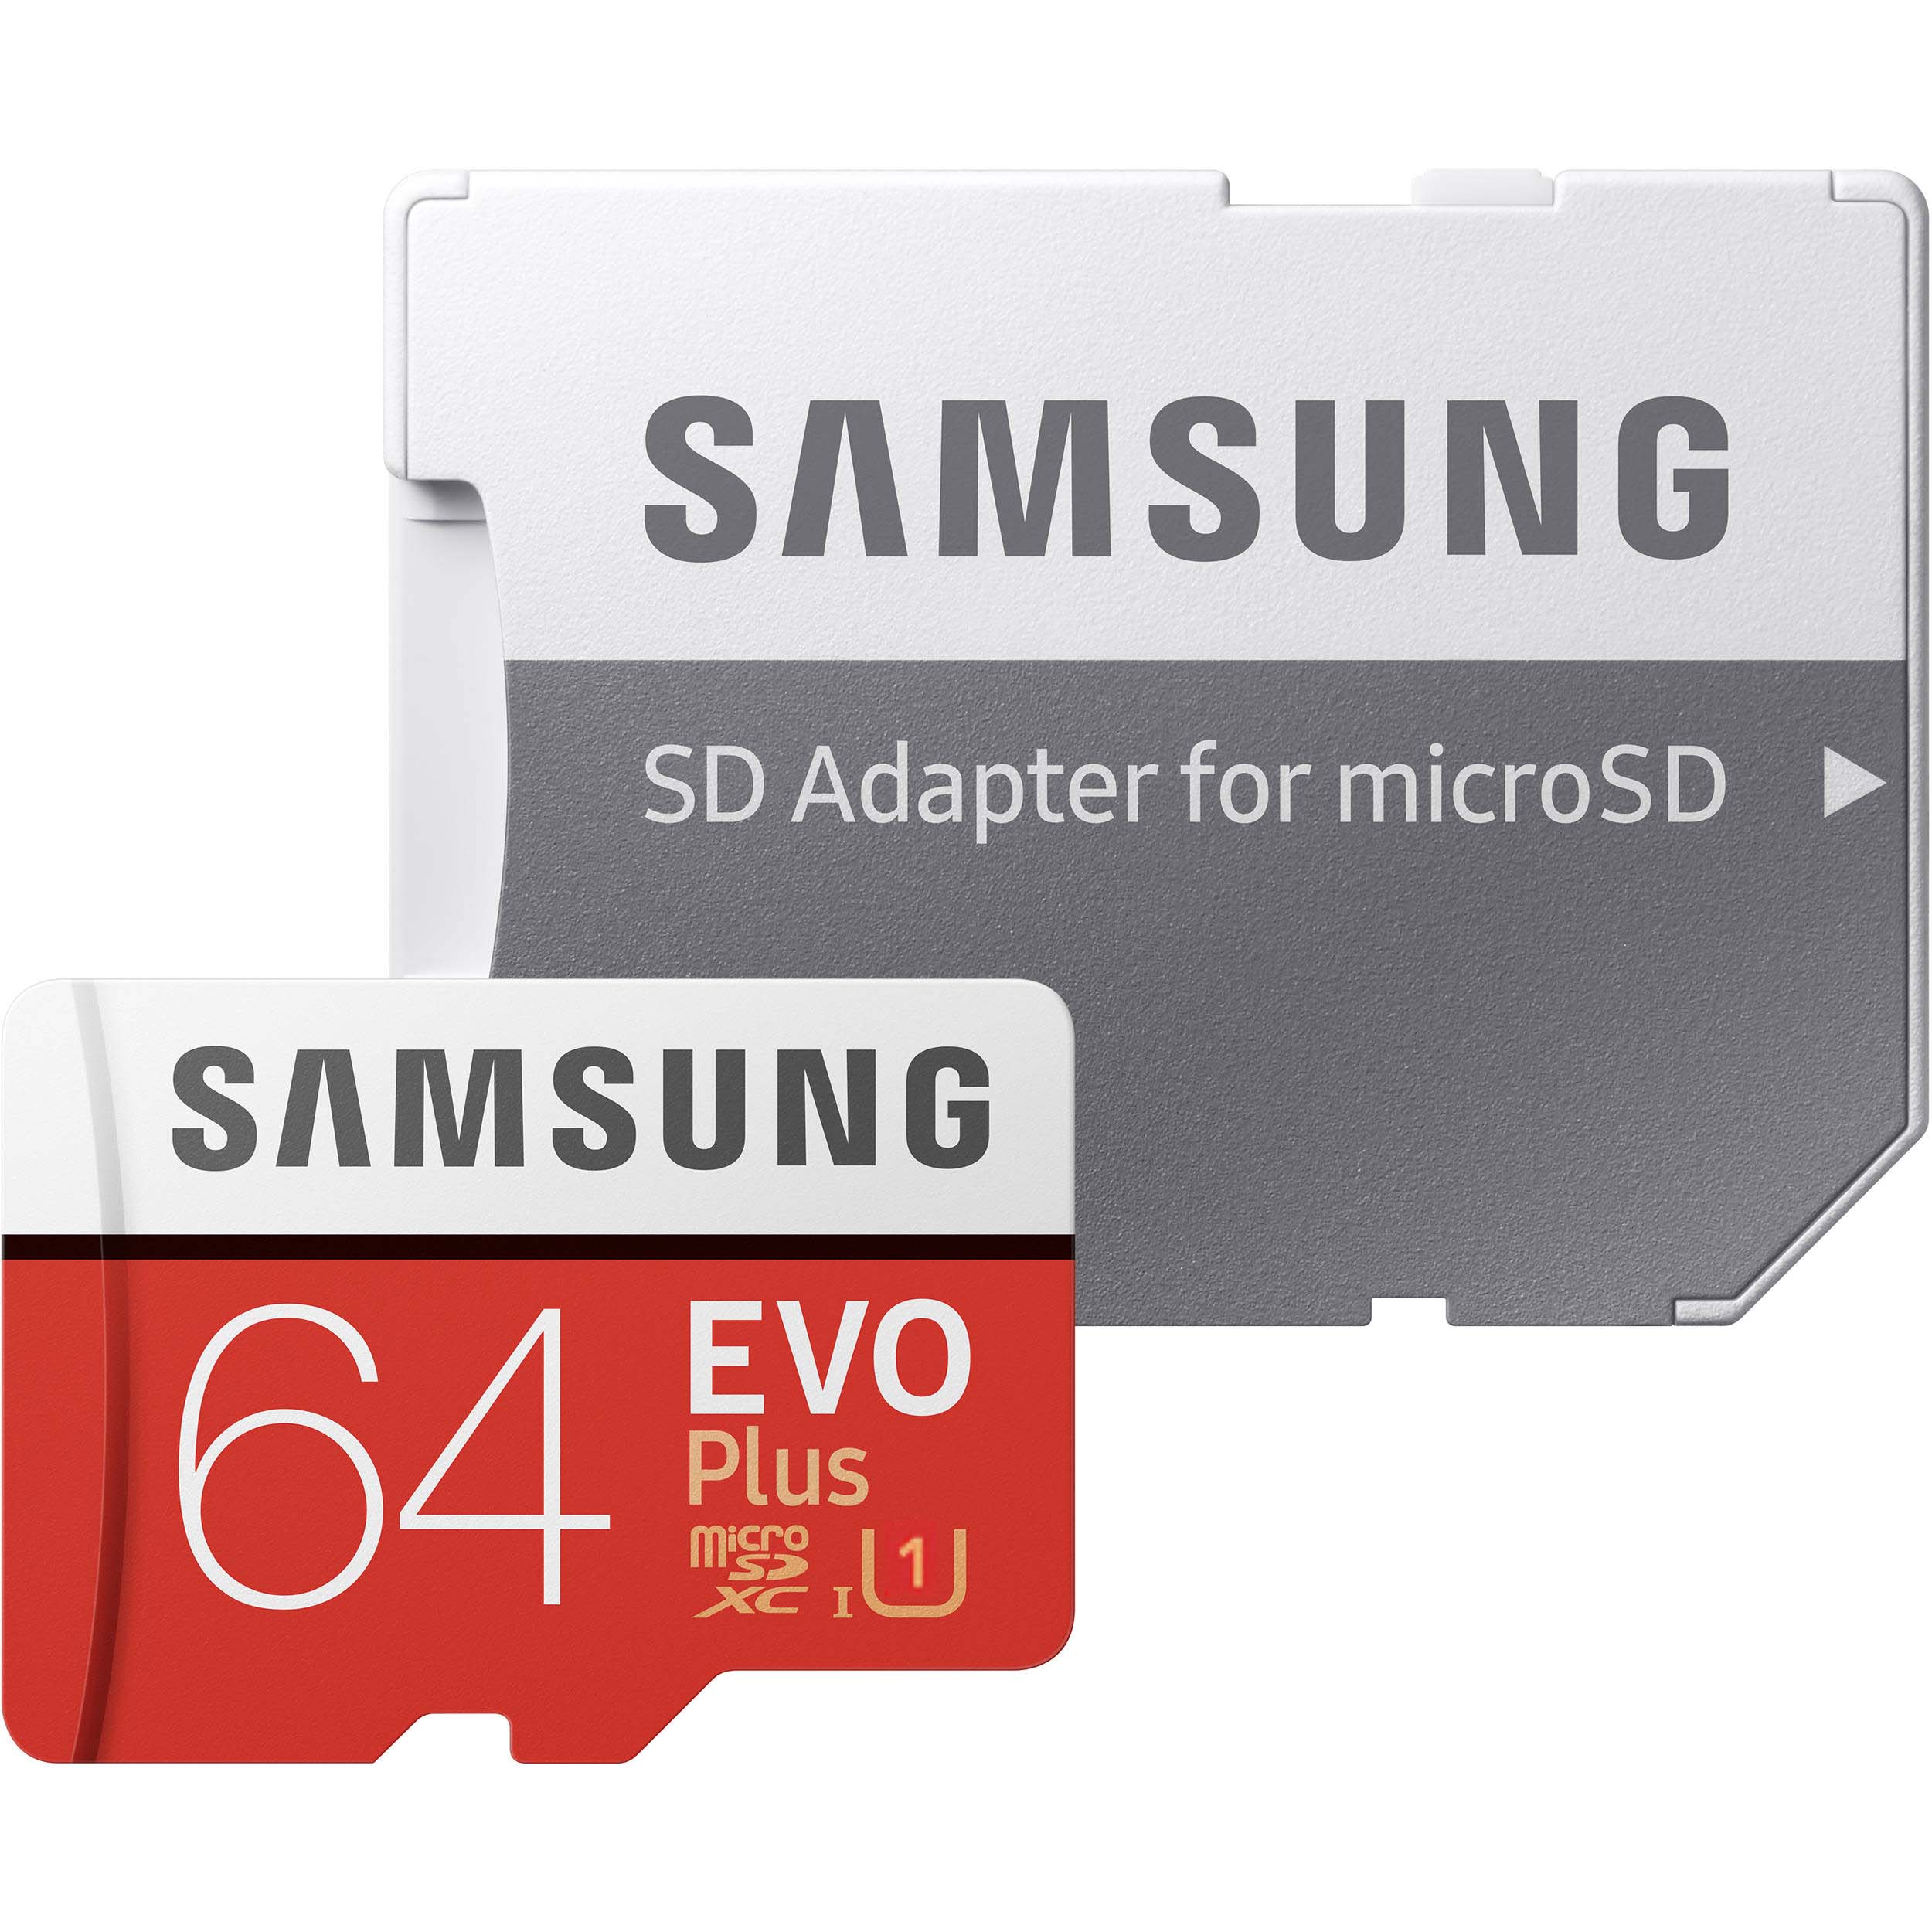 کارت حافظه microSDHC  مدل Evo Plus کلاس 10 استاندارد UHS-I U1 سرعت 80MBps همراه با آداپتور SD ظرفیت 64 گیگابایت